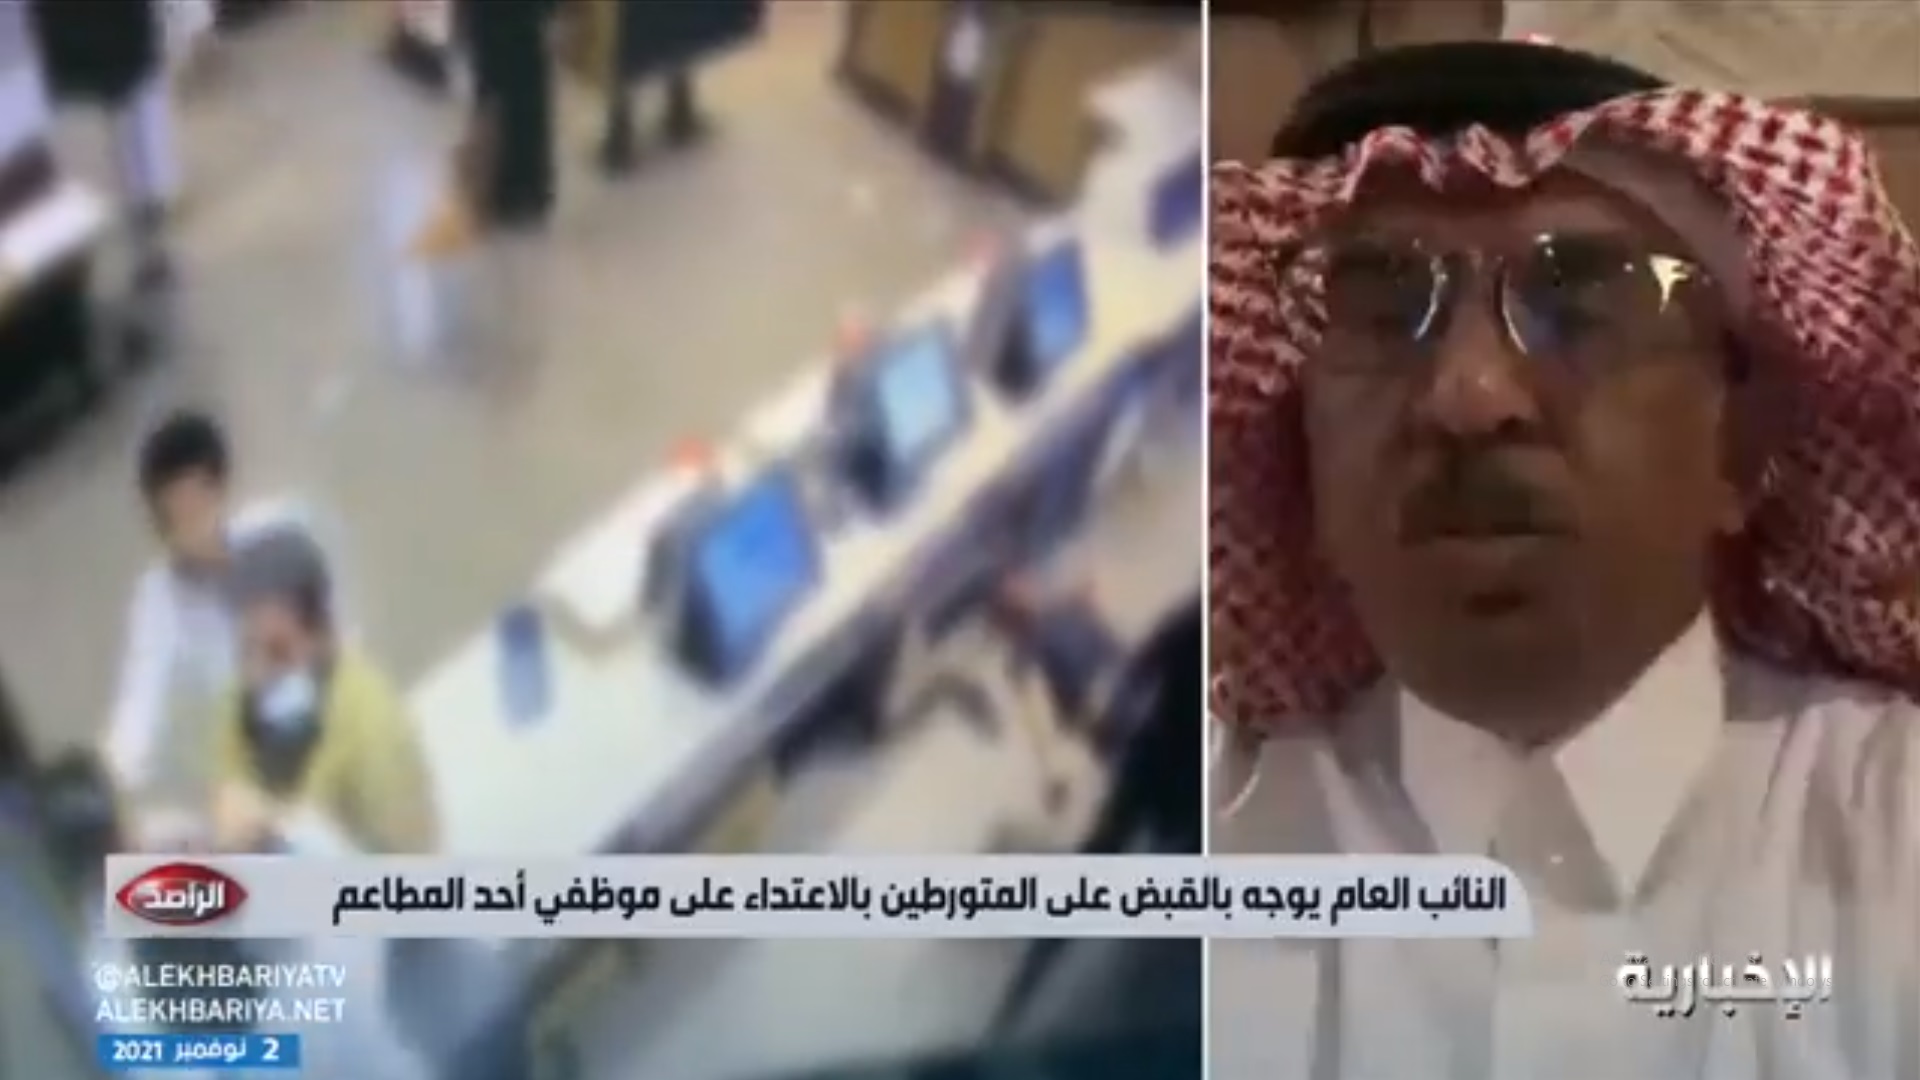 عقوبات متوقعة بحق المعتدين على عامل مطعم الرياض